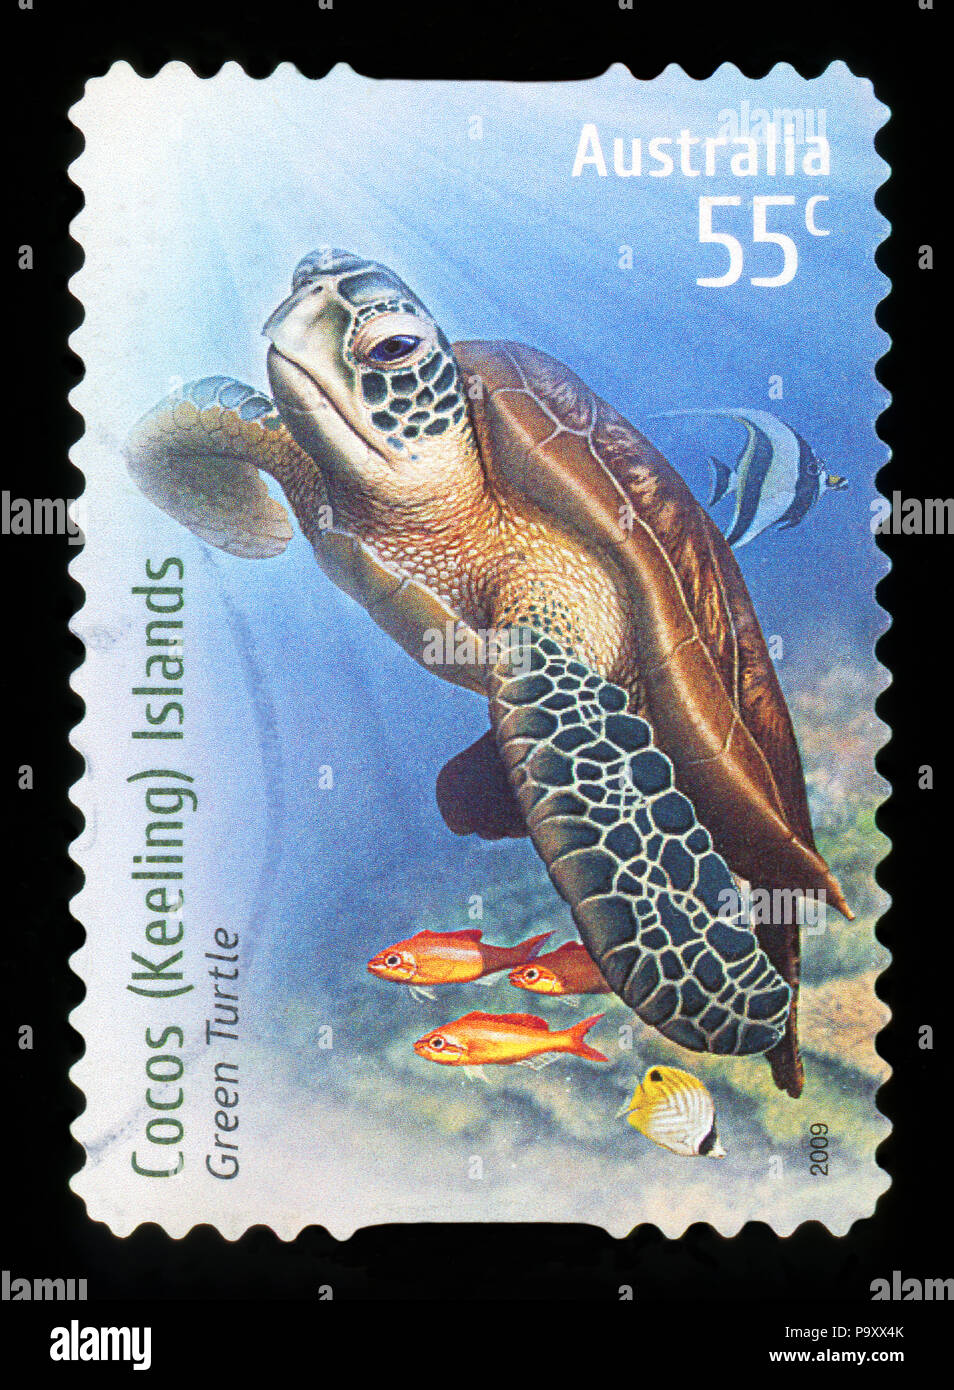 L'AUSTRALIE - circa 2009 : timbre imprimé en Australie montre Tortue verte à Iles des Cocos (Keeling), vers 2009 Banque D'Images